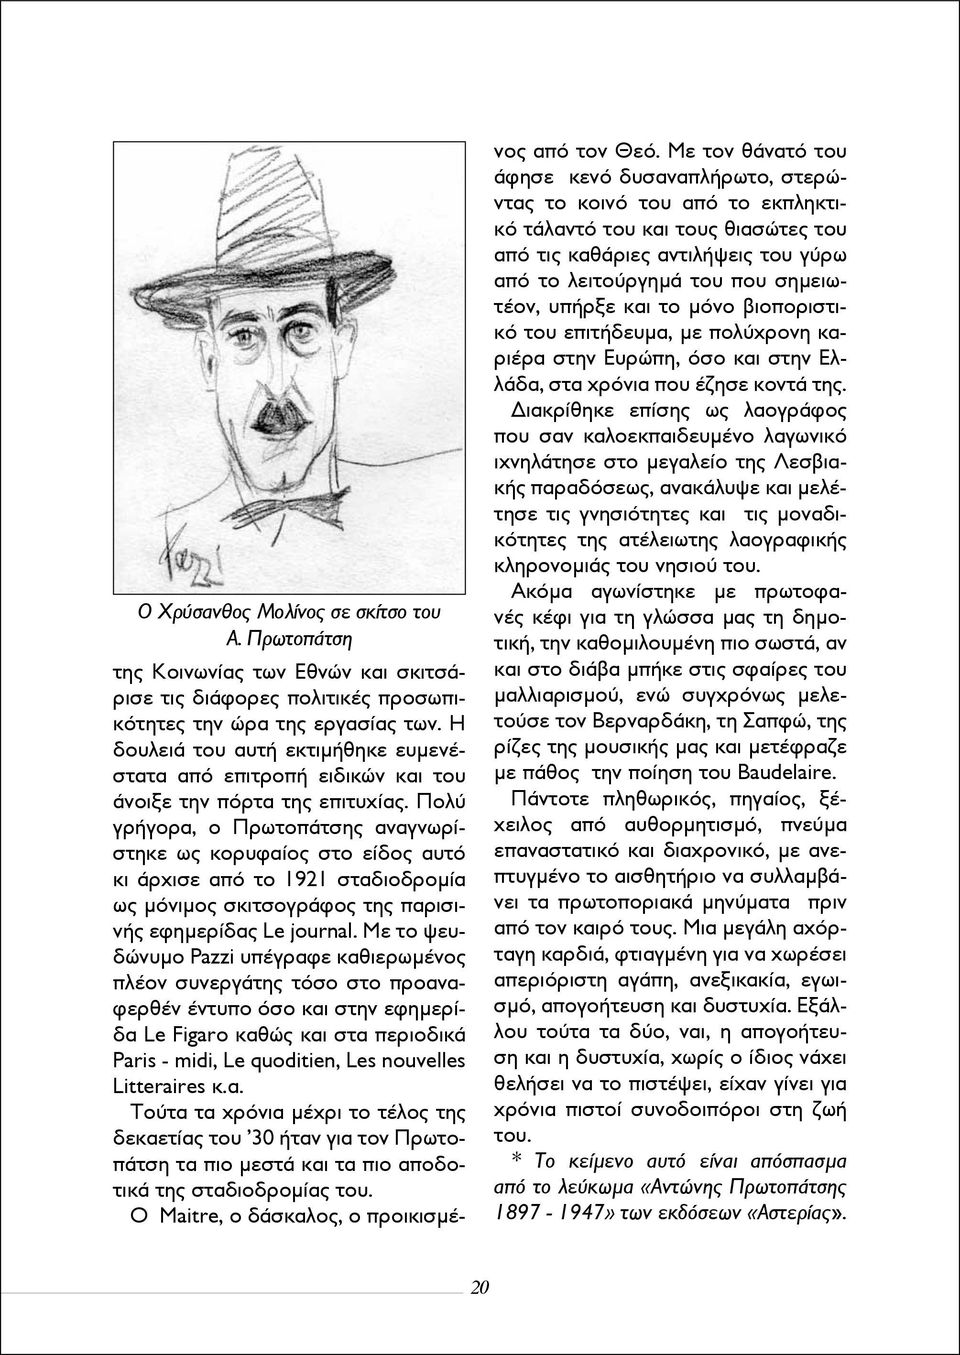 Πολύ γρήγορα, ο Πρωτοπάτσης αναγνωρίστηκε ως κορυφαίος στο είδος αυτό κι άρχισε από το 1921 σταδιοδρομία ως μόνιμος σκιτσογράφος της παρισινής εφημερίδας Le journal.